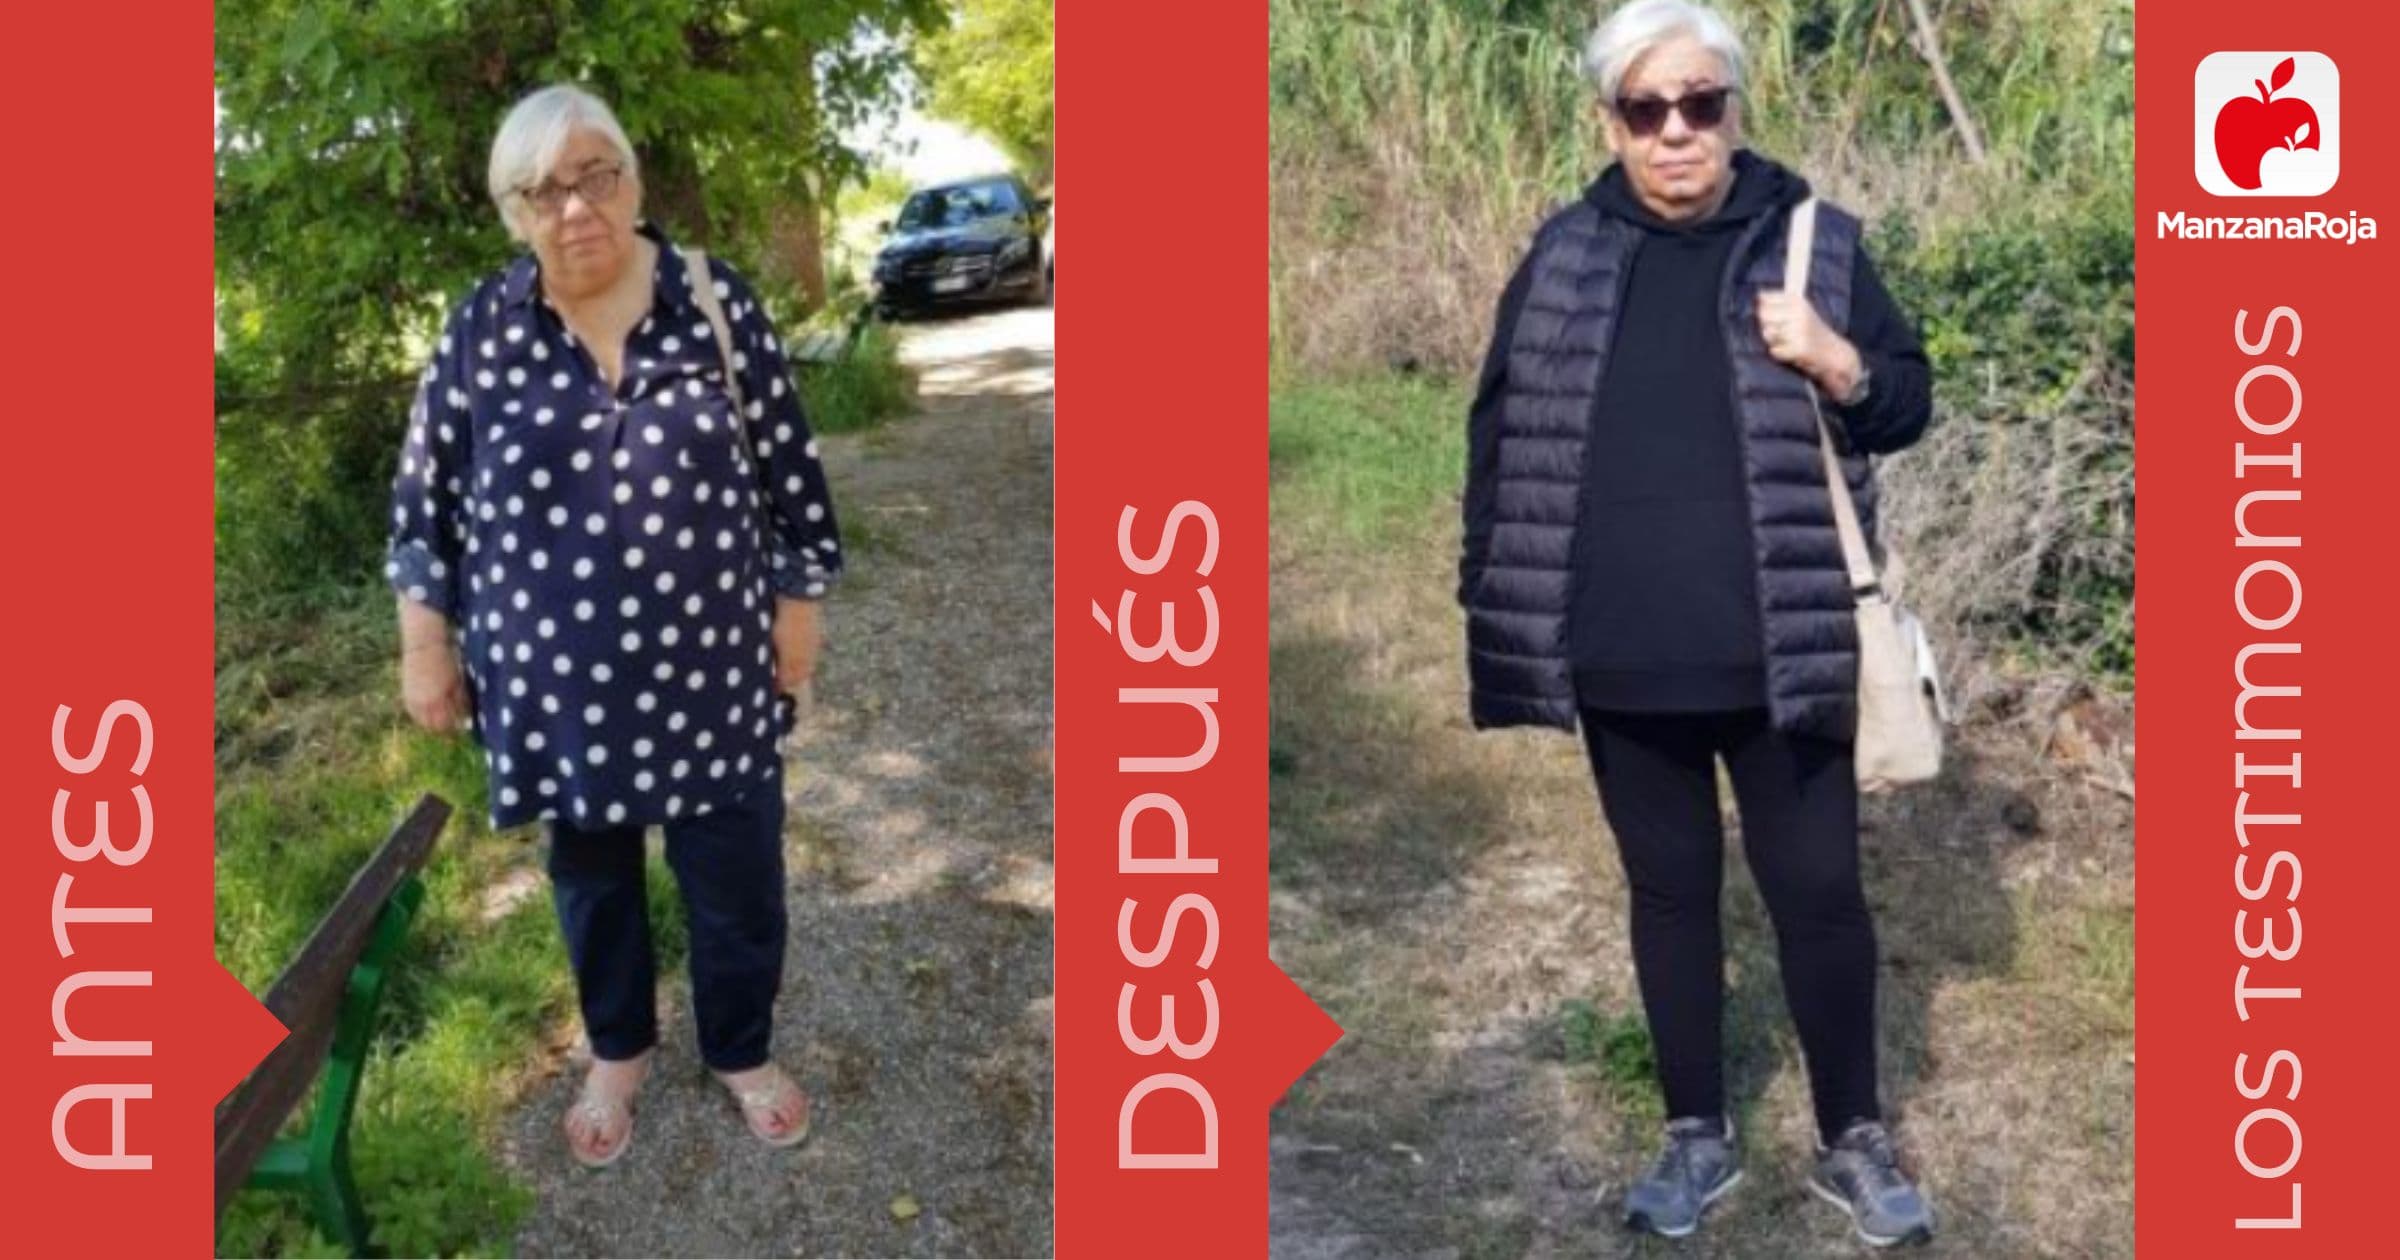 patricia antes y después de usar la app ManzanaRoja para perder peso